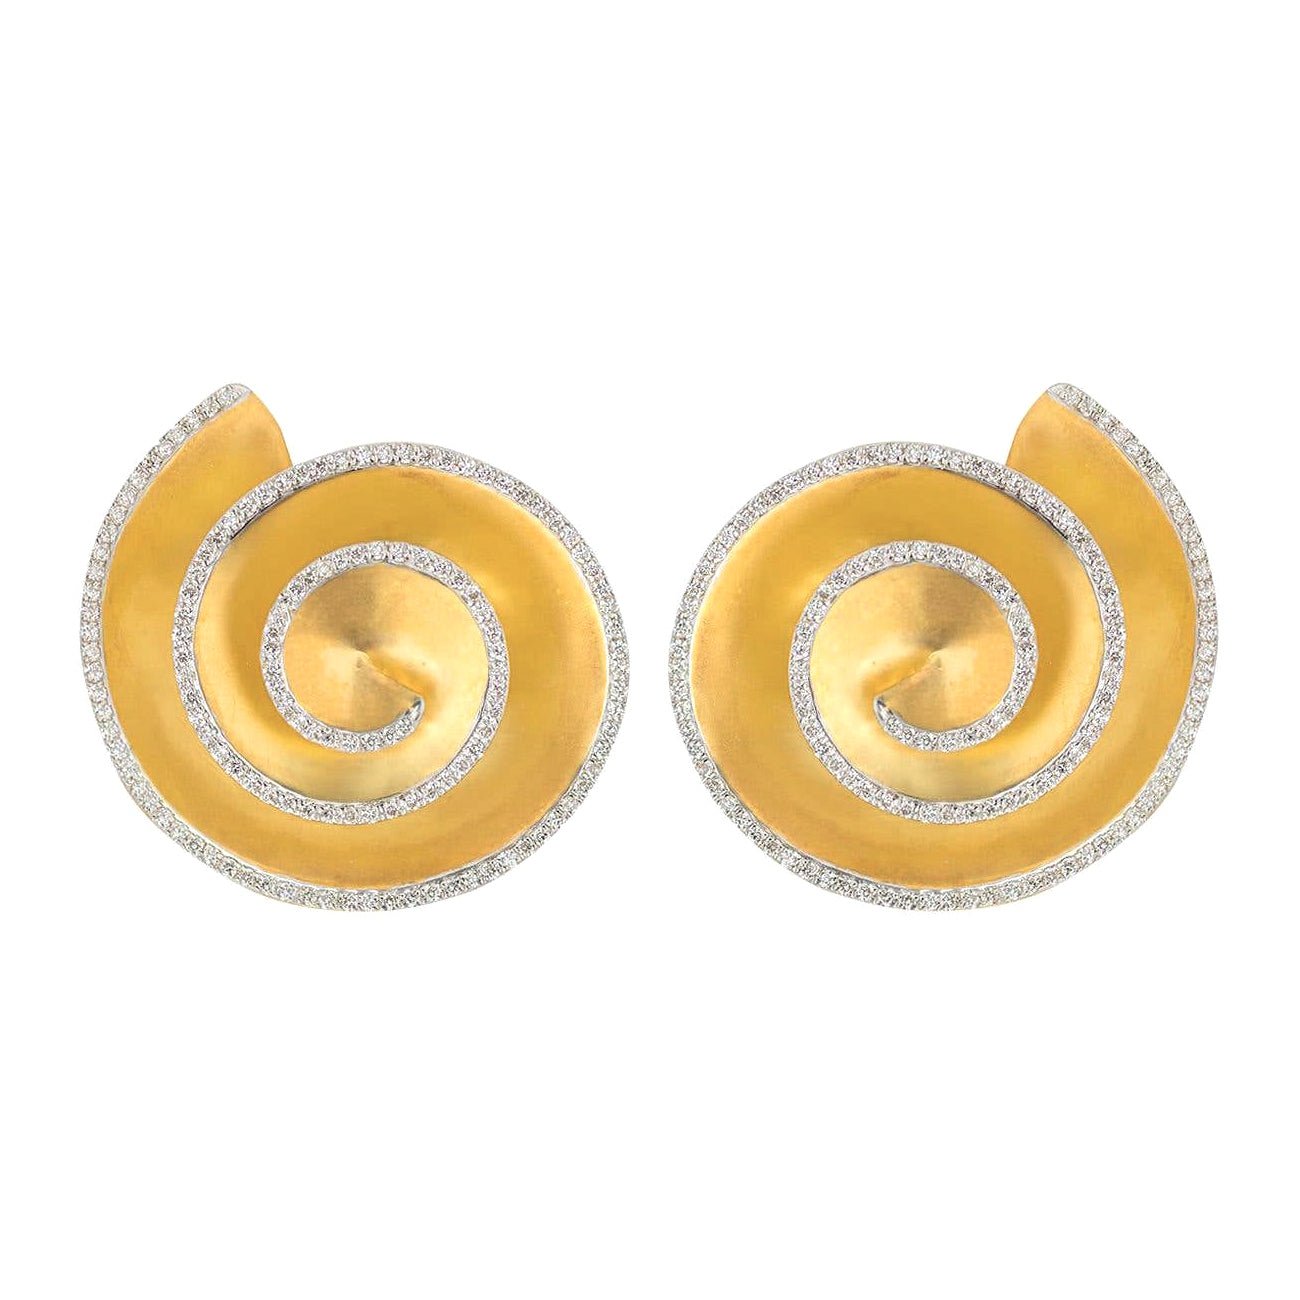 Greenleaf & Crosby - 18k Yellow Gold Diamond Swirl Shell Earrings